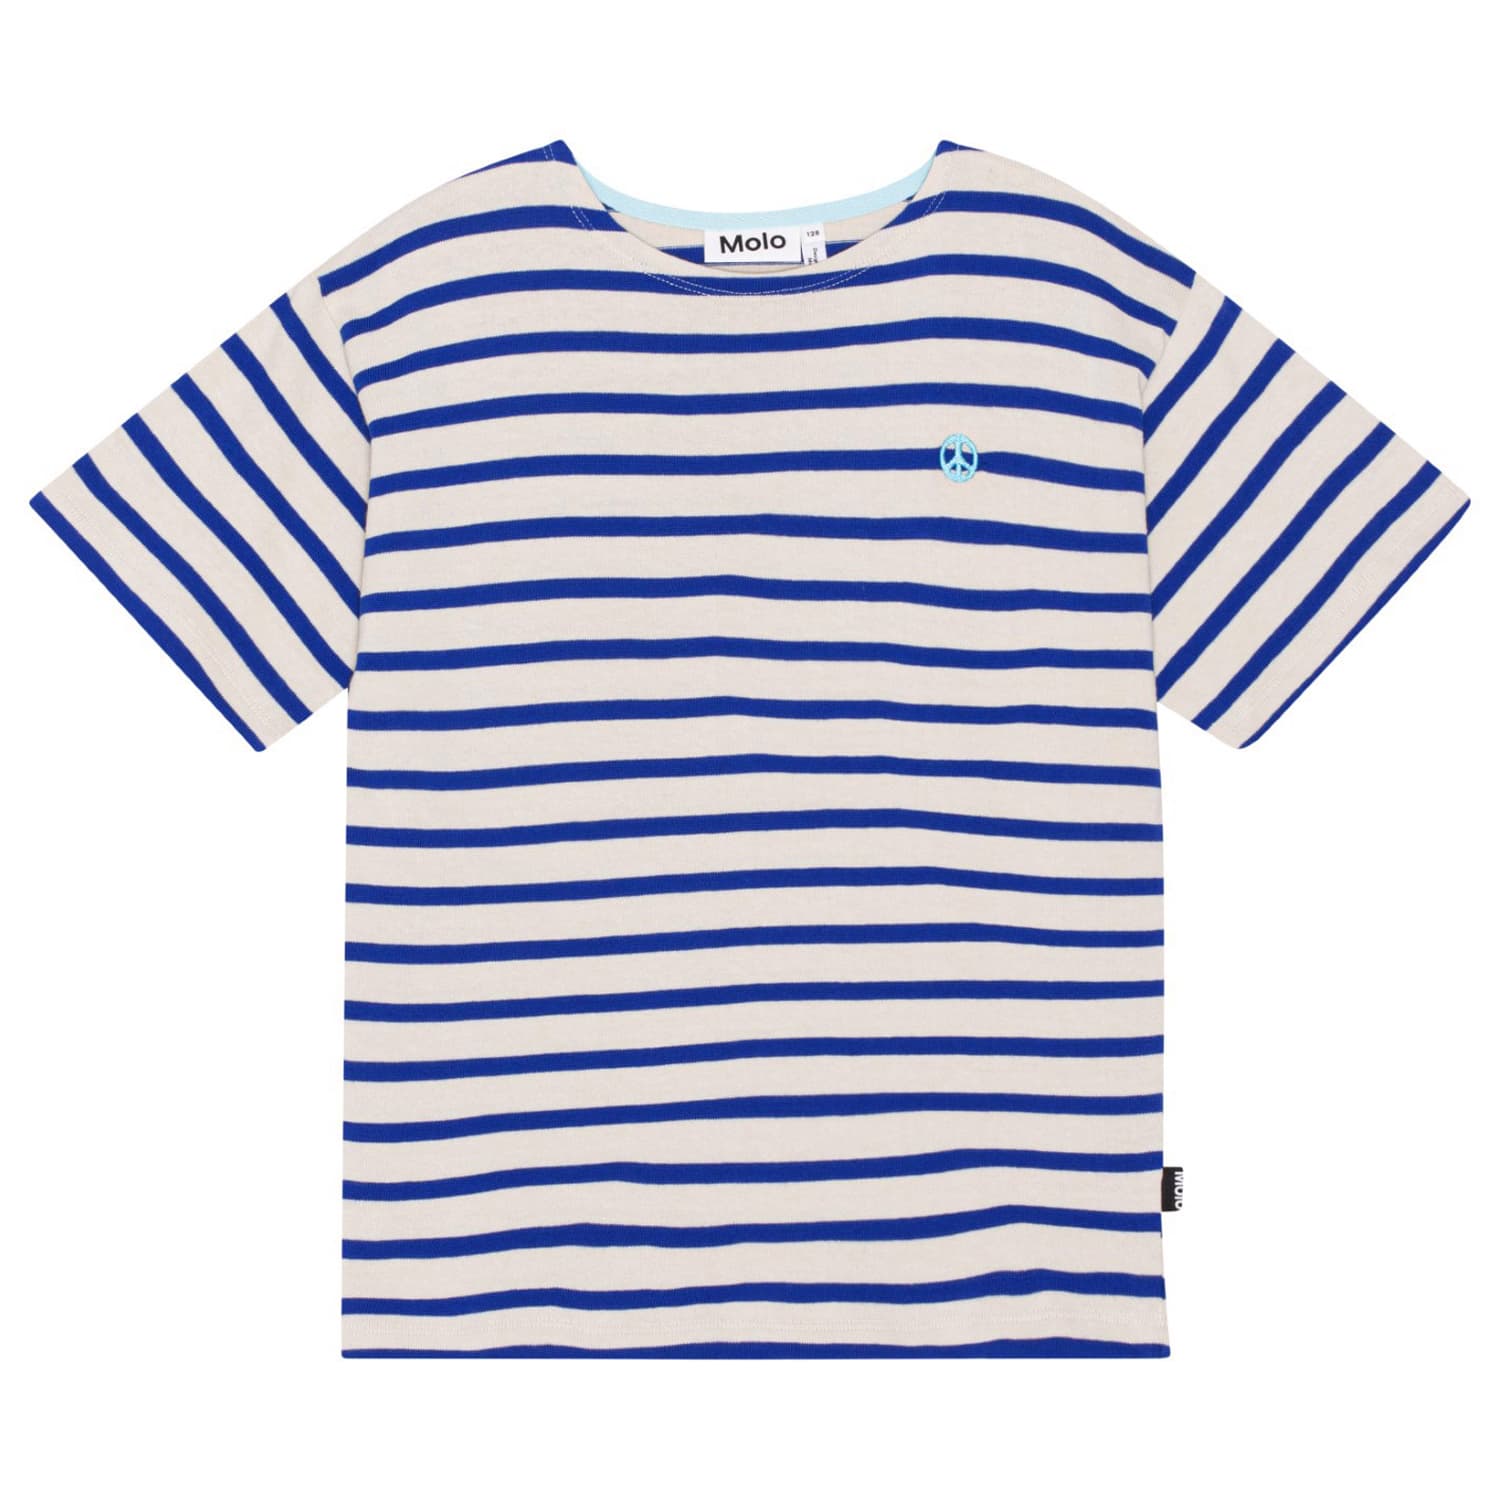 Rilee T-shirt (Reef Stripe)